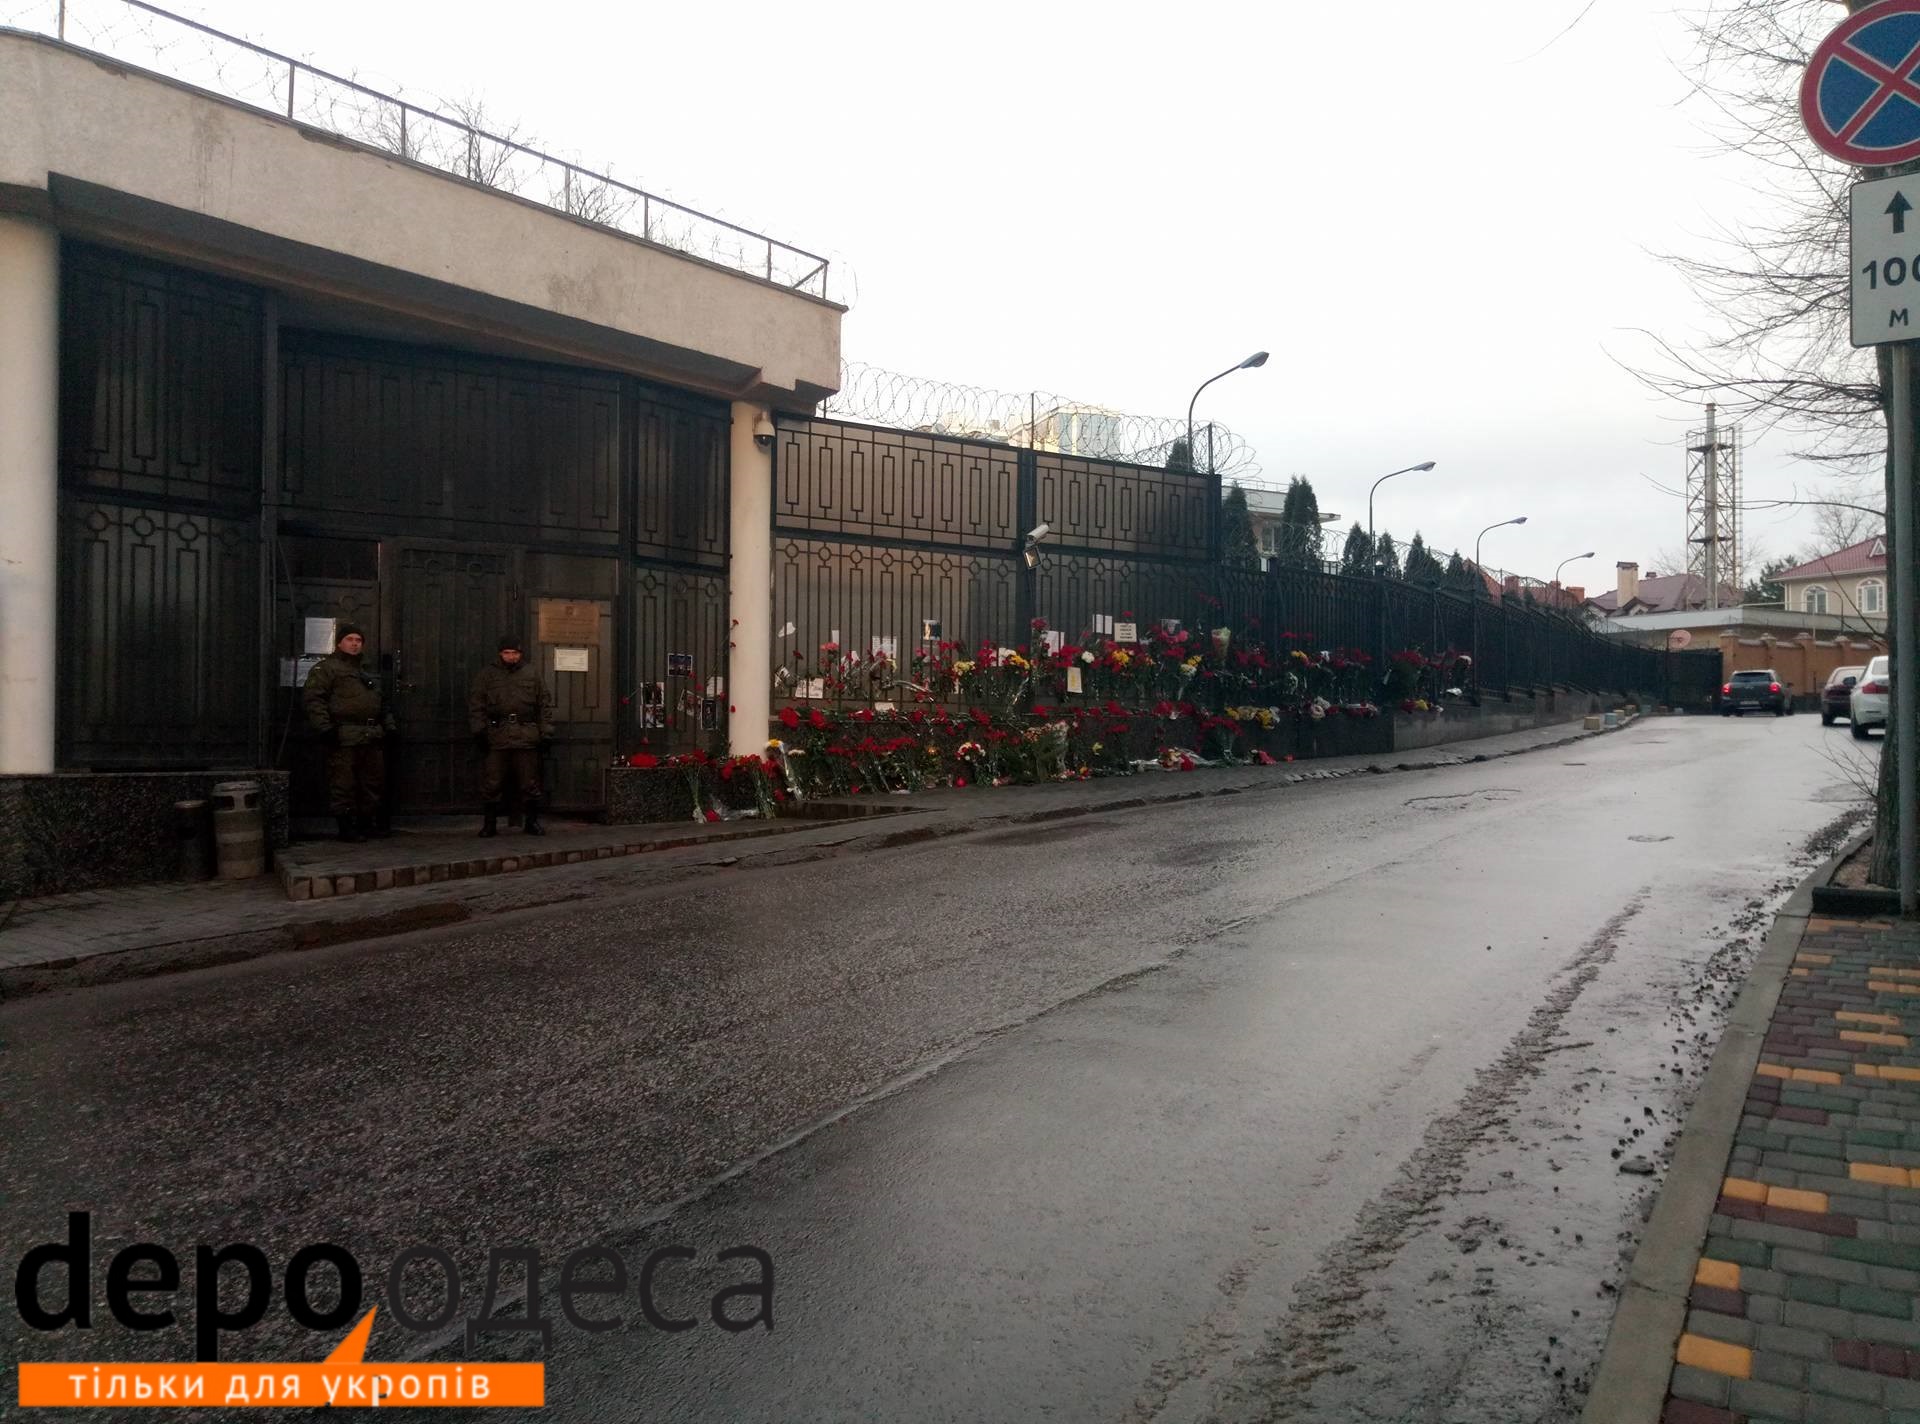 Під російським консульством в Одесі зникли всі квіти та лампадки (ФОТО) - фото 1